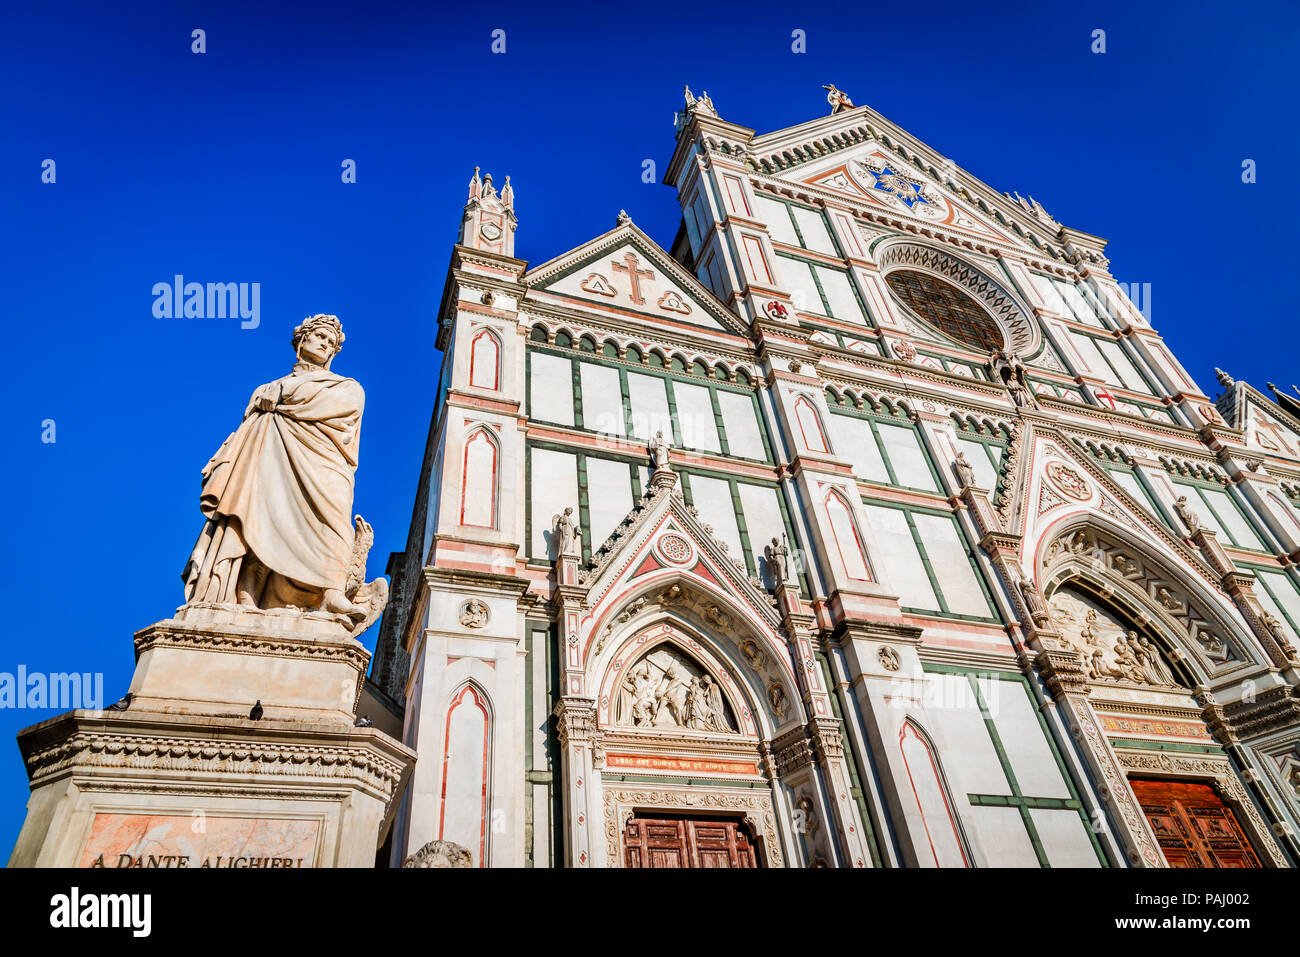 Florenz, Italien, gotische Fassade der Kathedrale Santa Croce in der Toskana Renaissance Stadt Florenz. Stockfoto